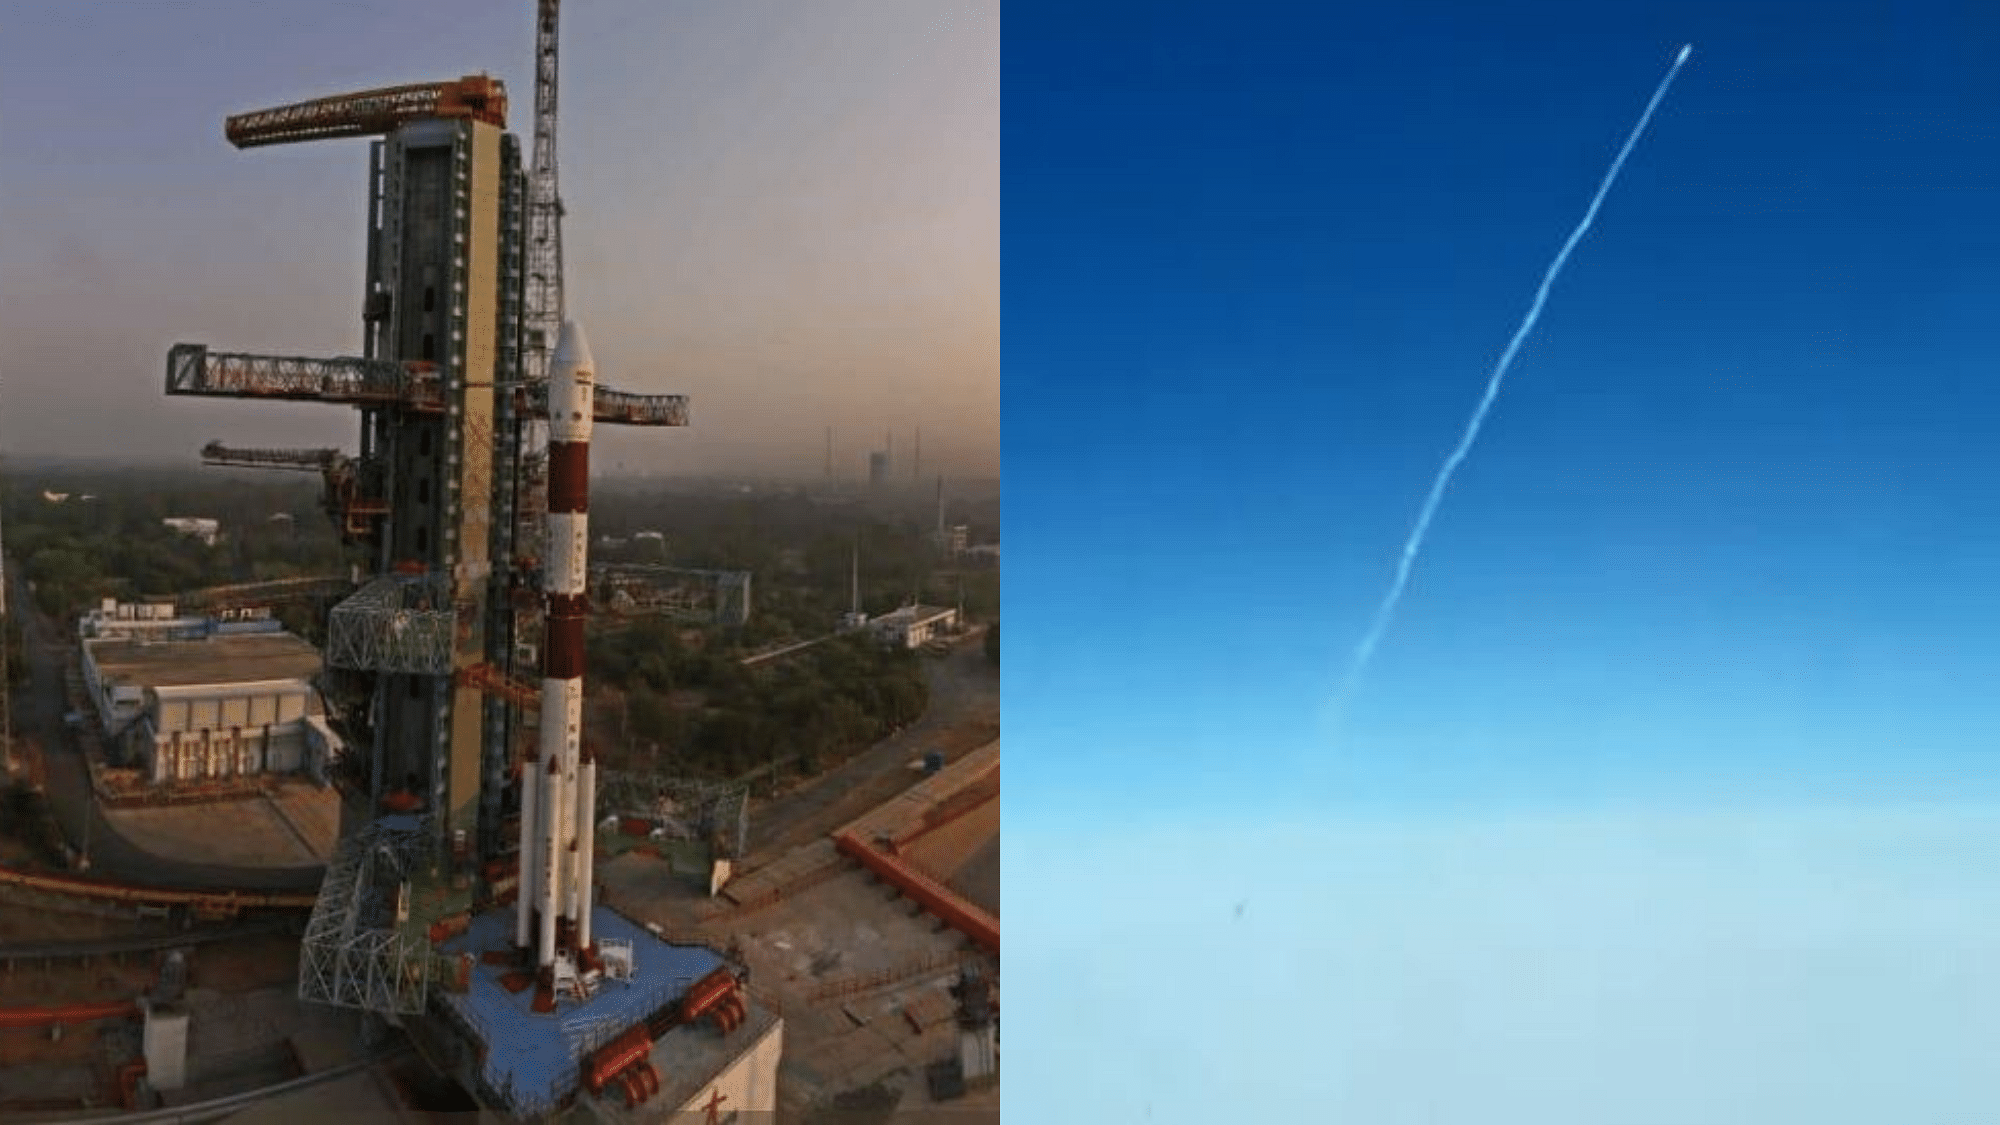 इंडिगो एयलाइंस के पायलट ने रॉकेट लॉन्च की वीडियो जब वो अंतरिक्ष की ओर बढ़ रहा था